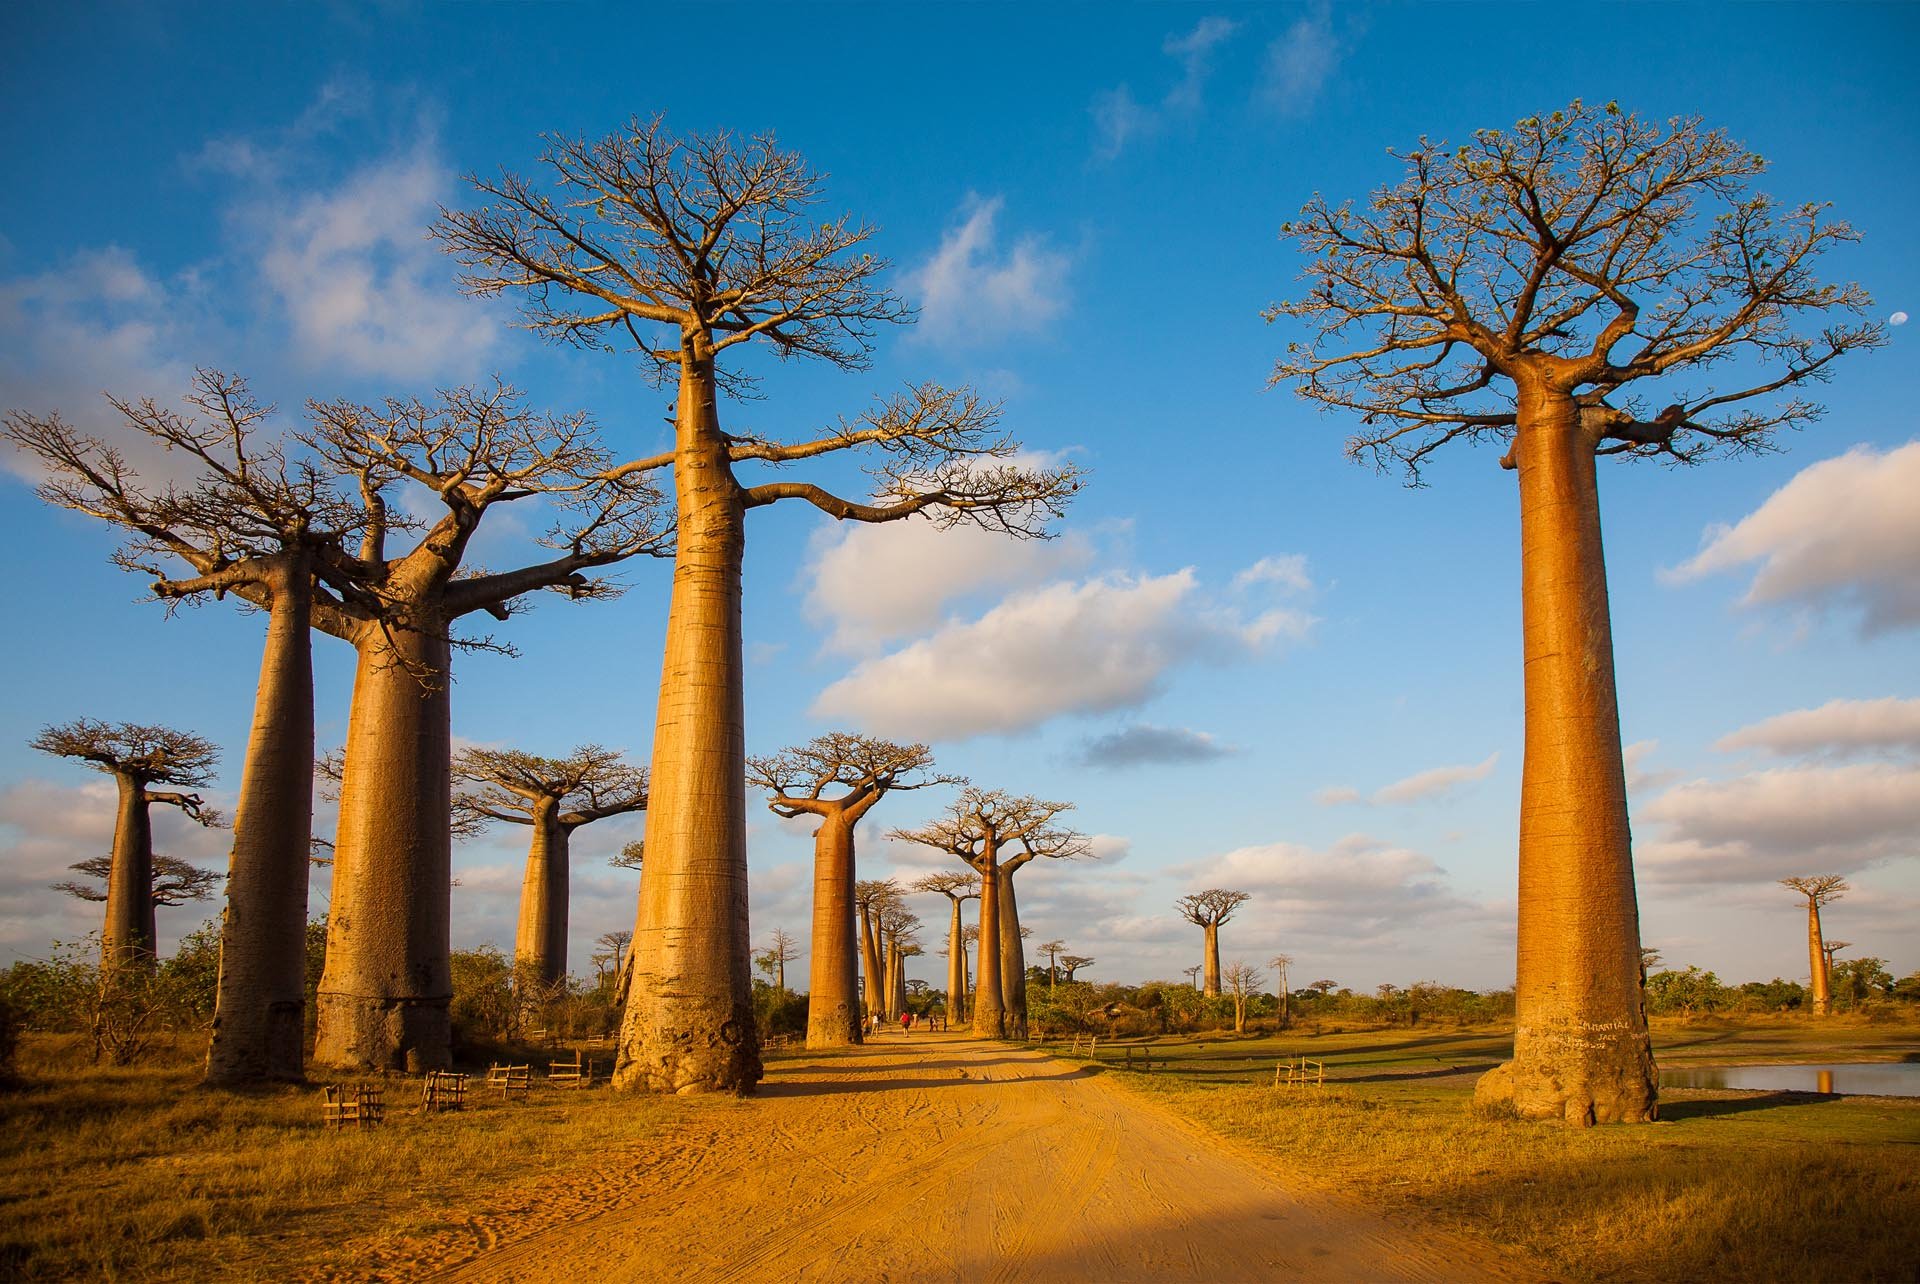 Ба баб. Мадагаскар остров баобаб. Баобаб Адансония Мадагаскарская. Баобаб дерево. Африка остров Мадагаскар.